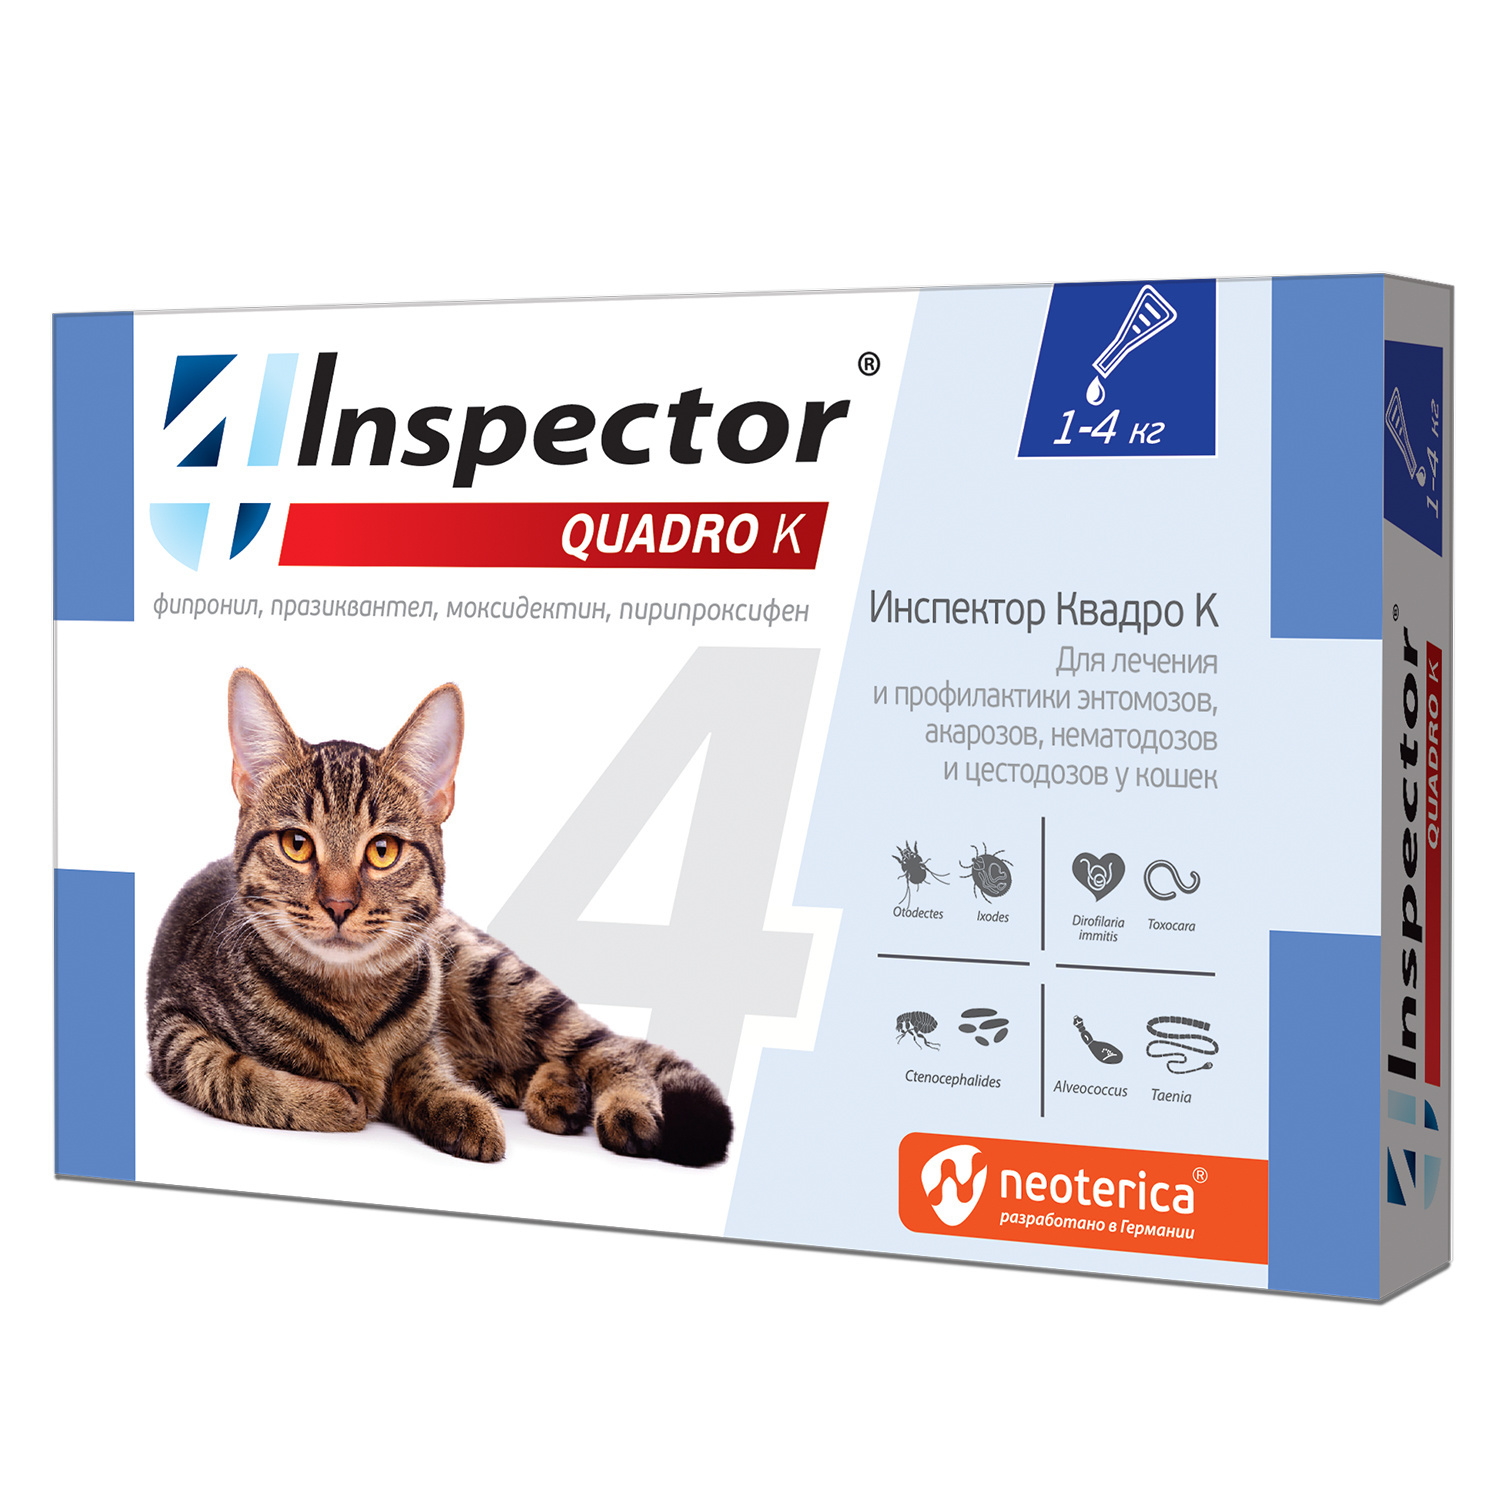 Inspector Inspector quadro капли на холку для кошек 1-4 кг, от глистов, насекомых, клещей (180 г) фото